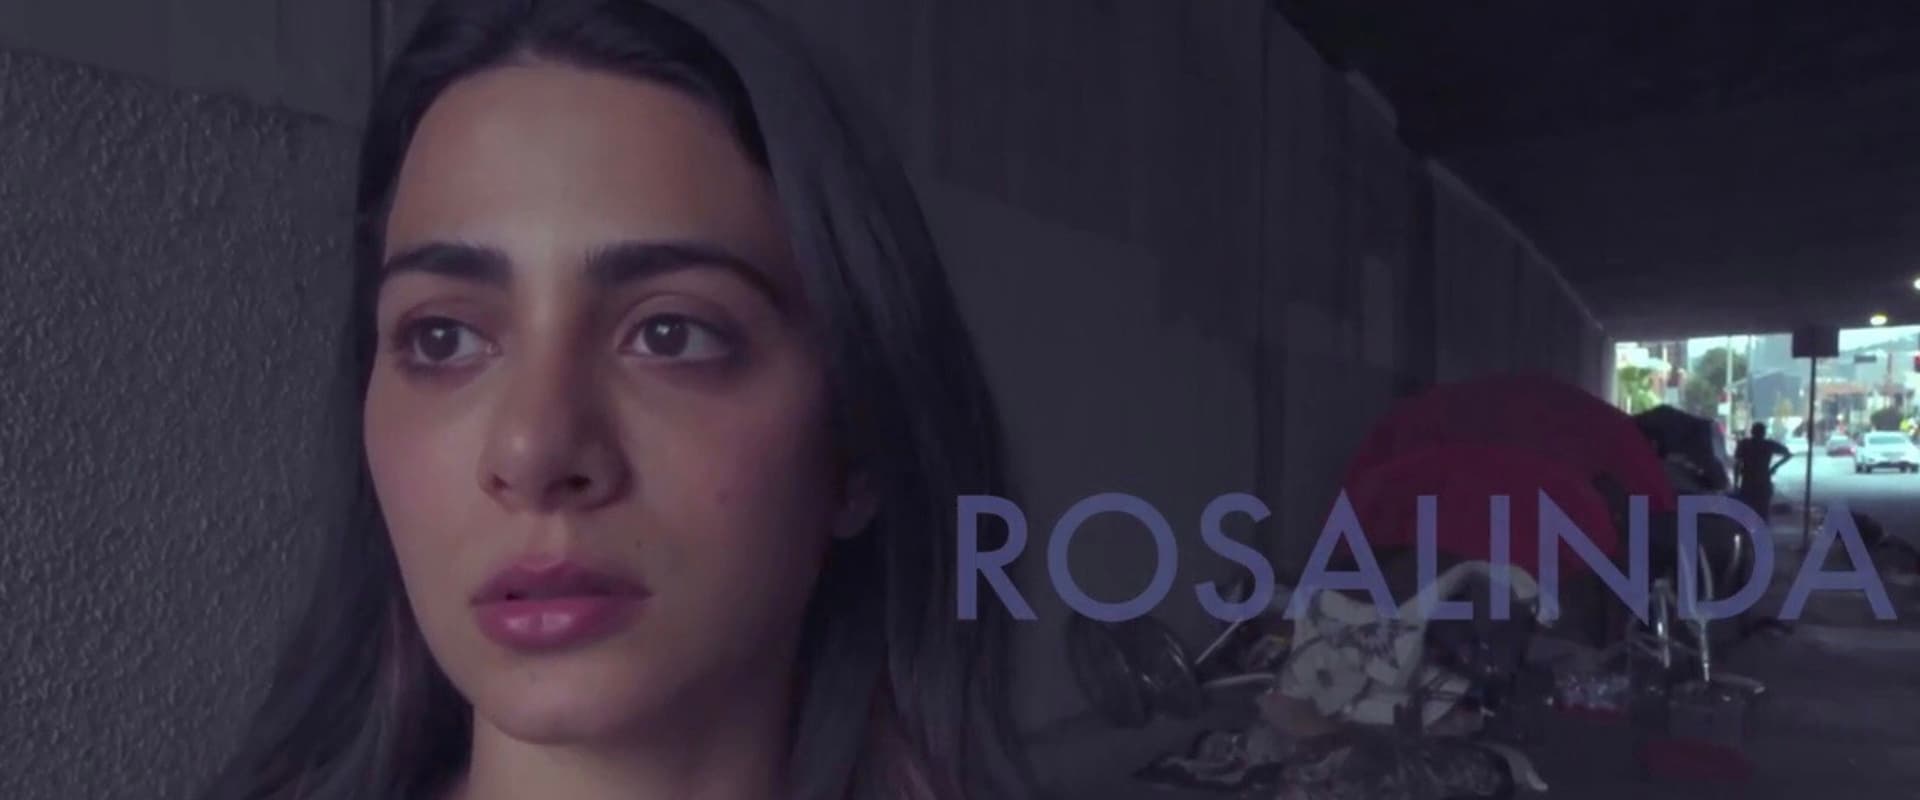 Rosalinda 2020